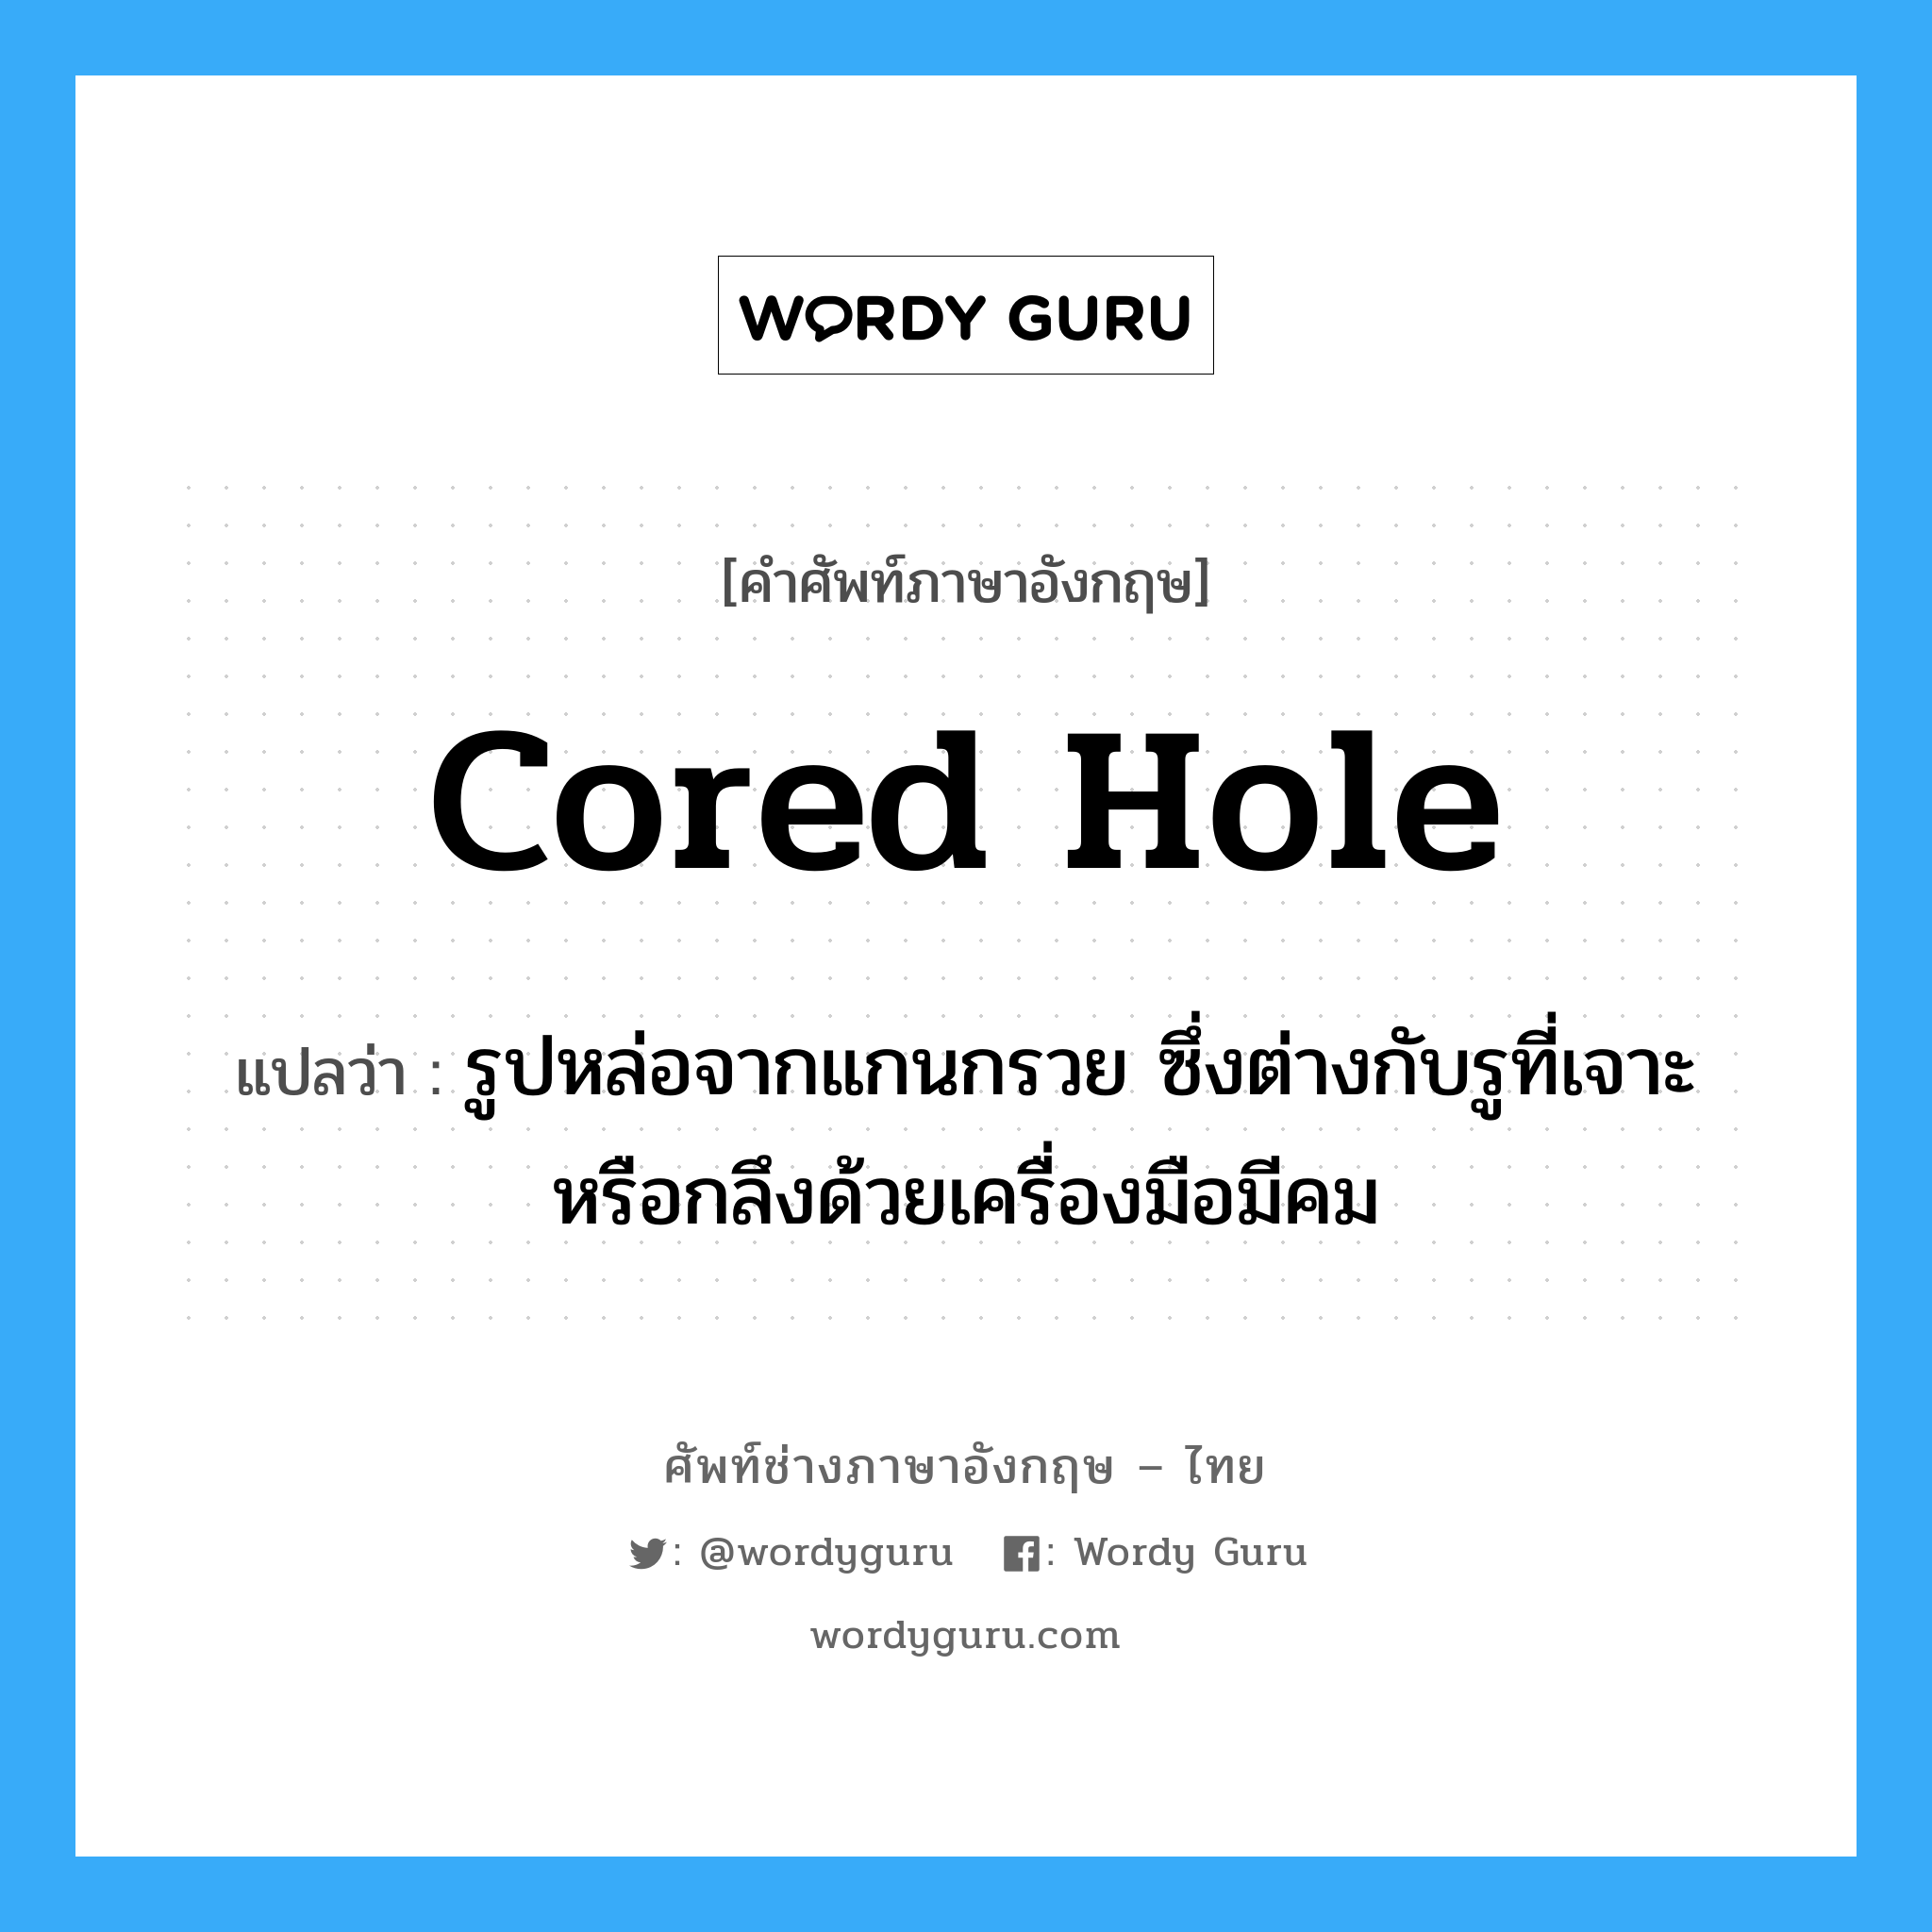 cored hole แปลว่า?, คำศัพท์ช่างภาษาอังกฤษ - ไทย cored hole คำศัพท์ภาษาอังกฤษ cored hole แปลว่า รูปหล่อจากแกนกรวย ซึ่งต่างกับรูที่เจาะหรือกลึงด้วยเครื่องมือมีคม